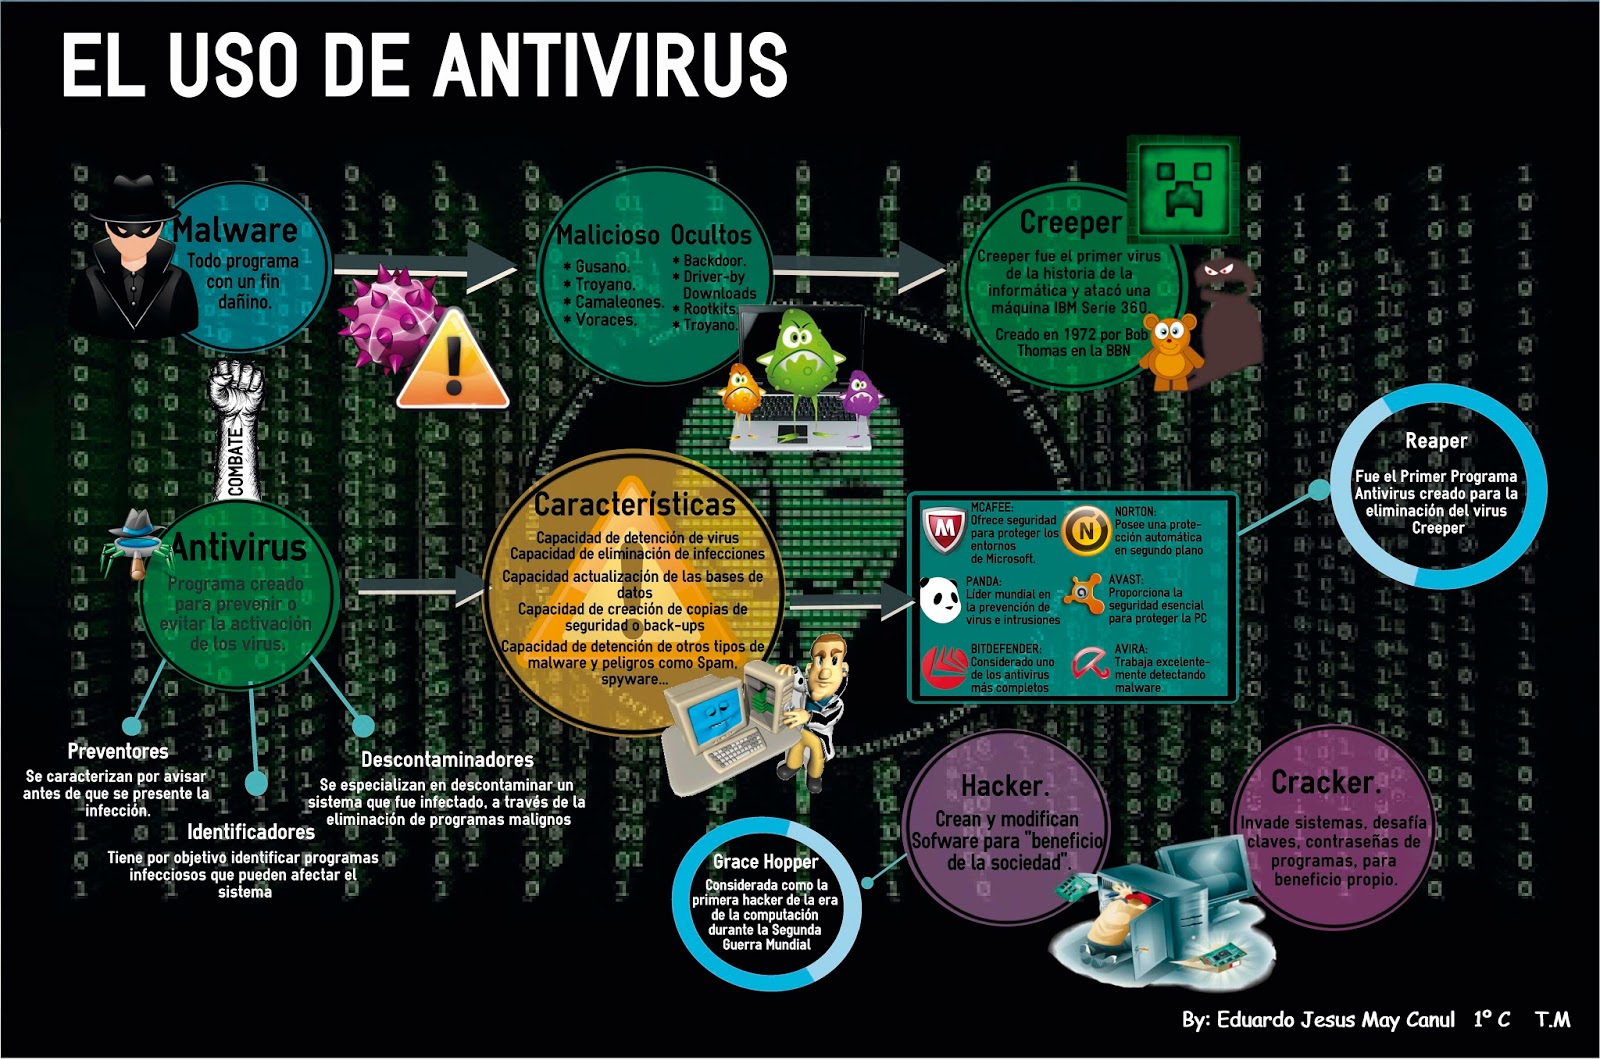 El uso de antivirus